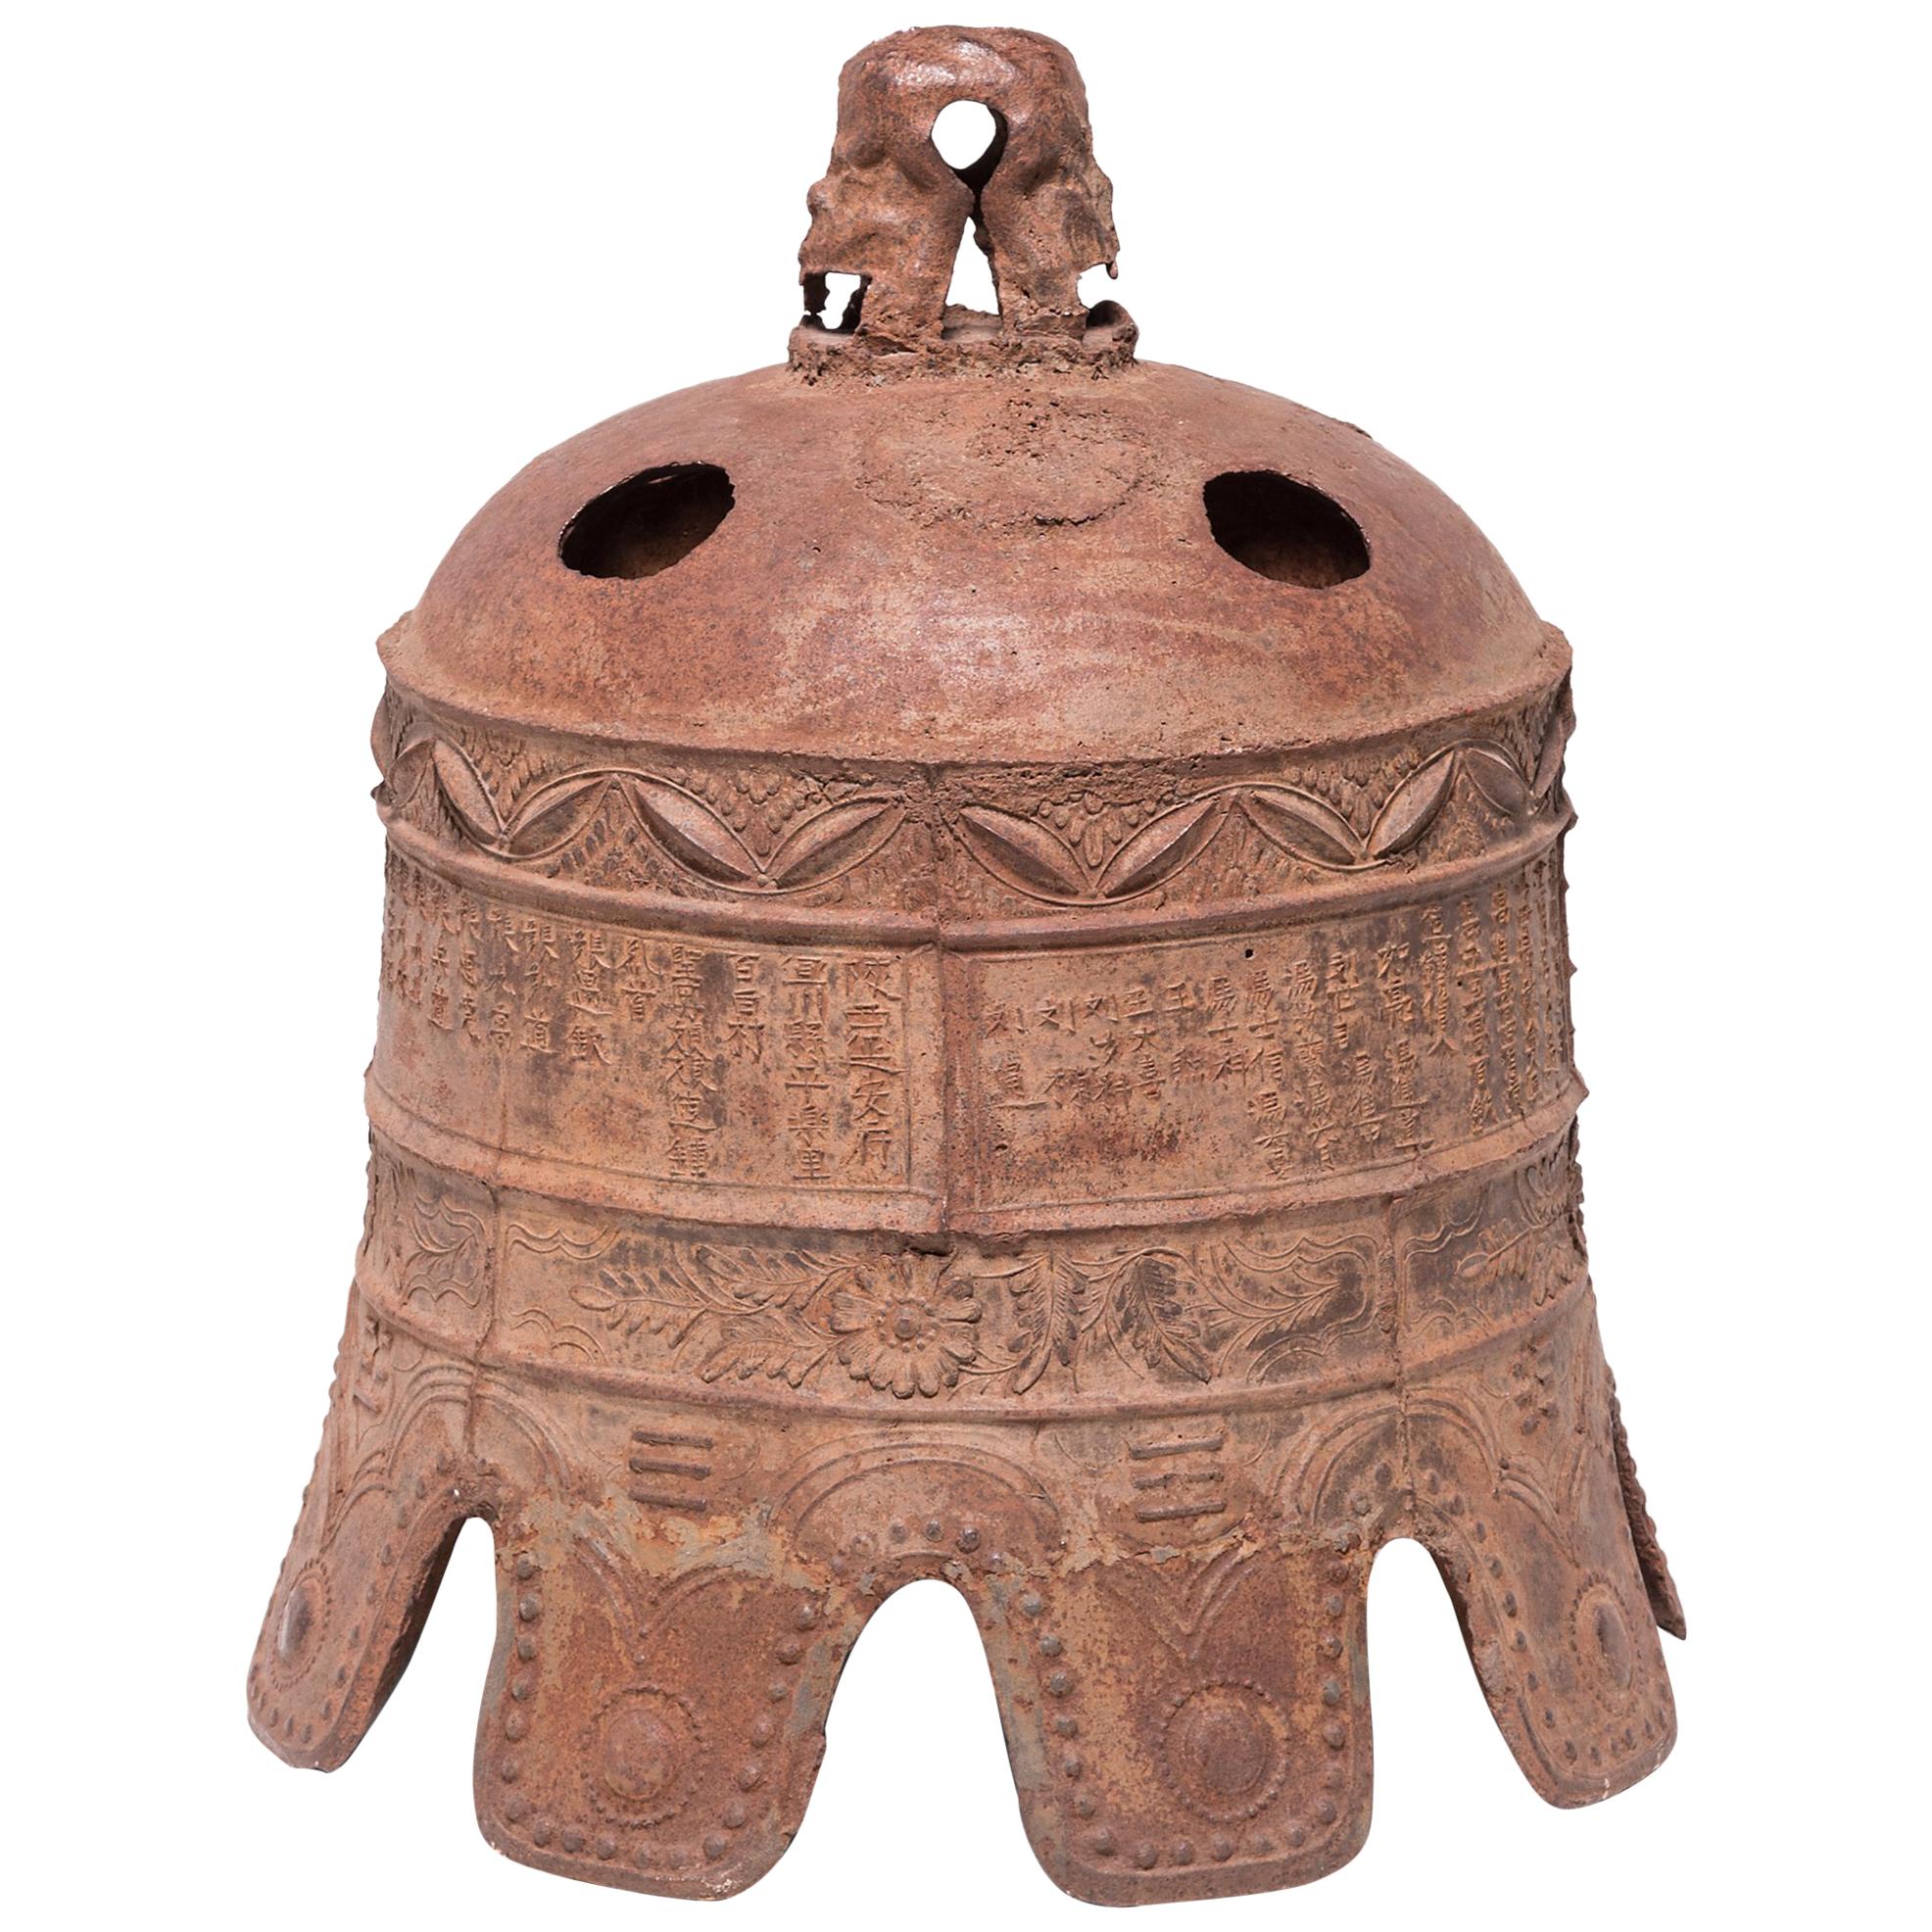 Chinese Wanli-Era Cast Iron Bell